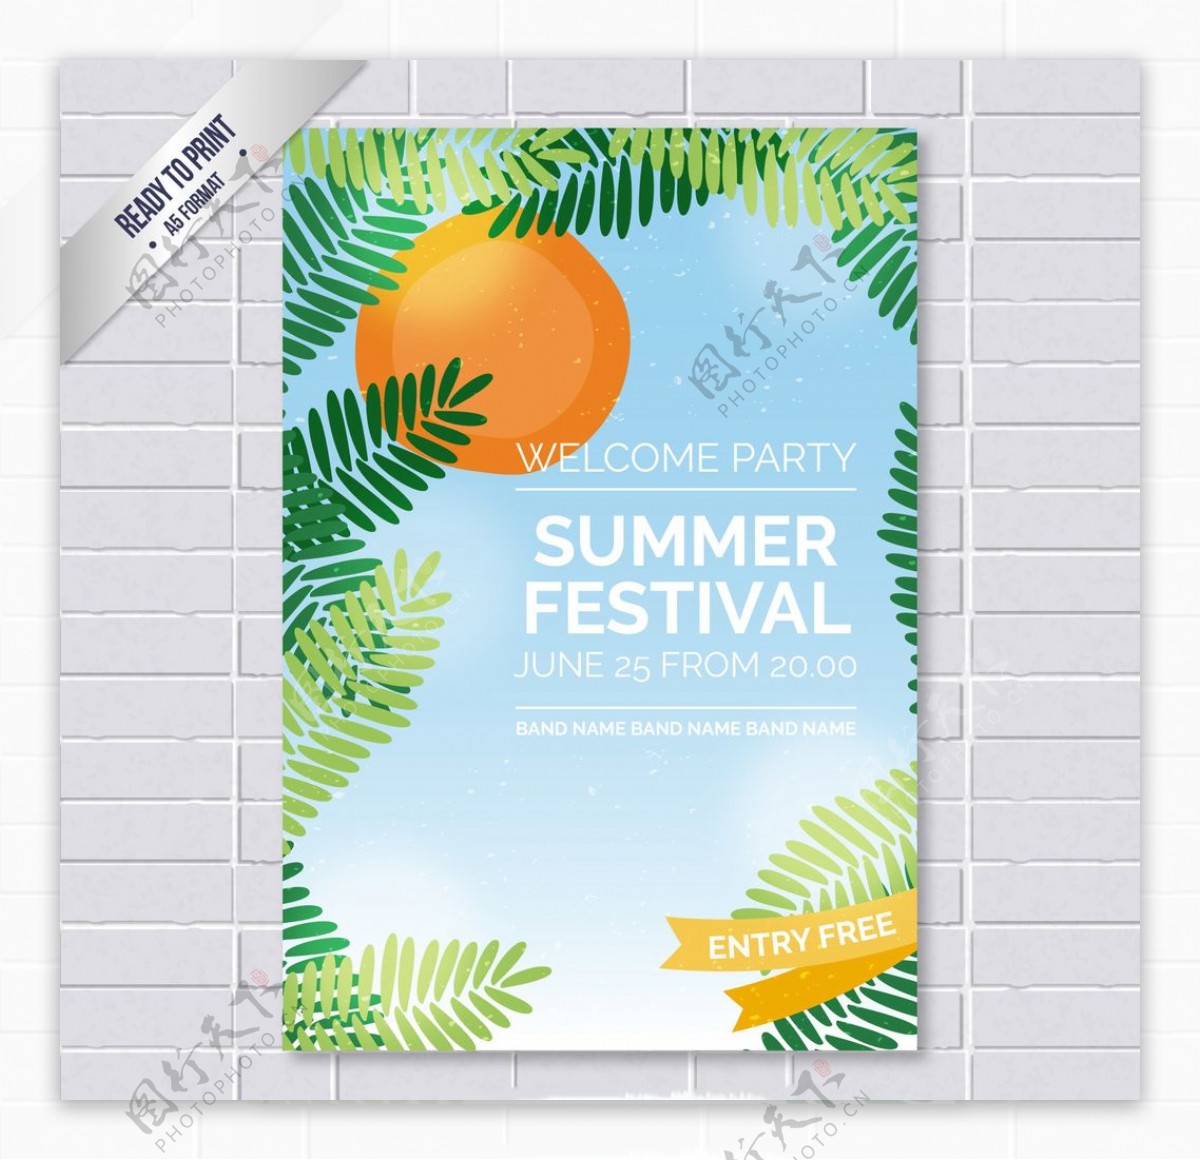 夏季音乐节的海报